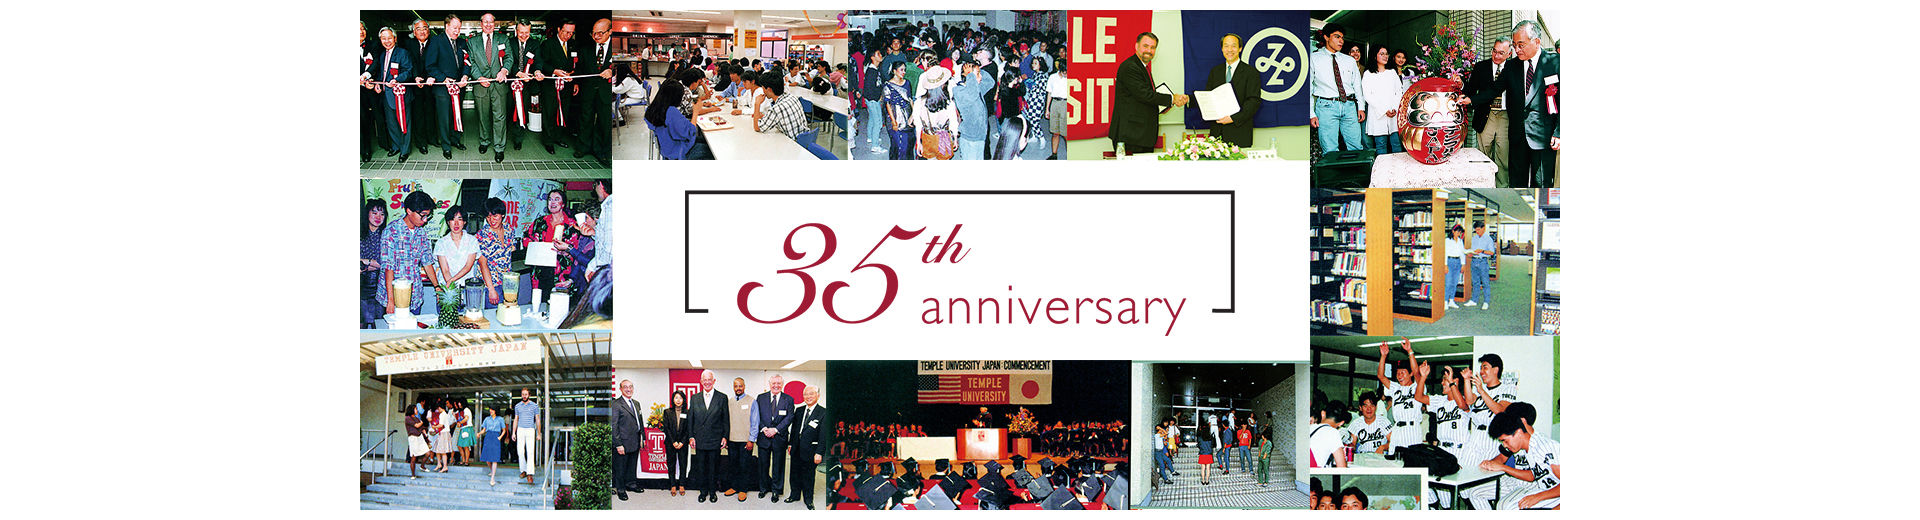 テンプル大学ジャパンキャンパス35周年記念